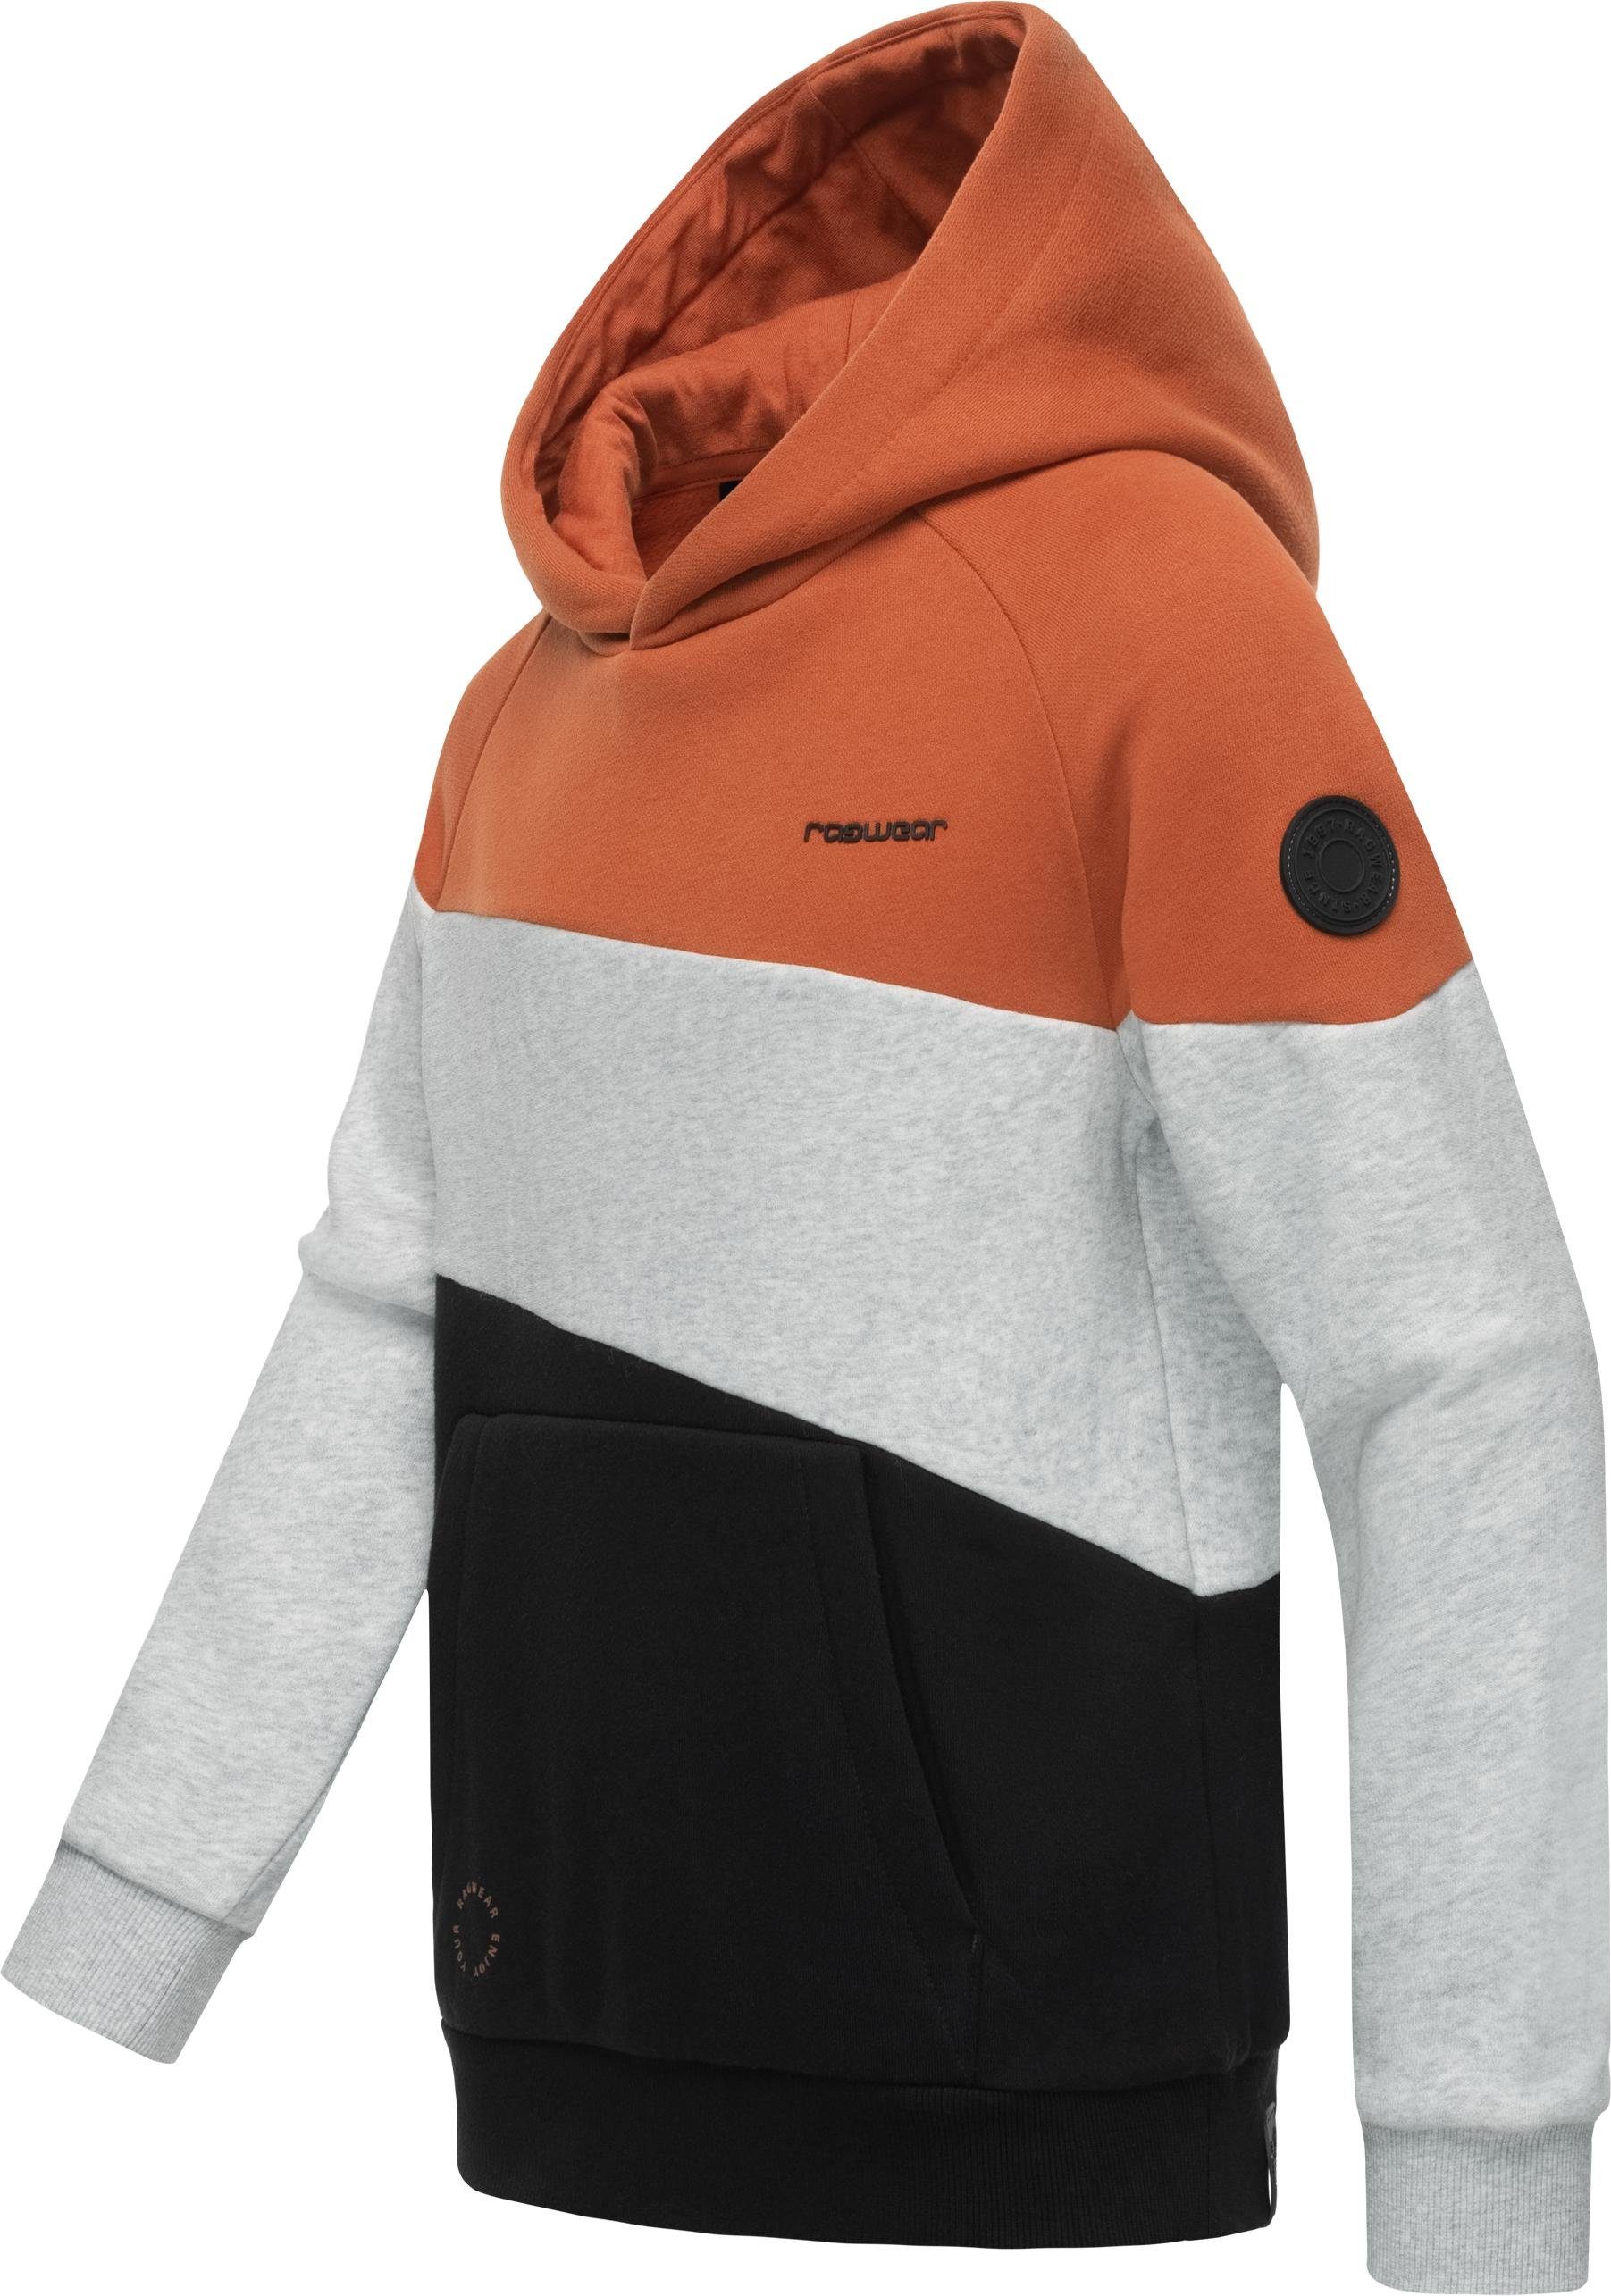 Kapuzenpullover Kapuzensweater orange Kinder großer Jungen Kapuze Vendio Ragwear mit